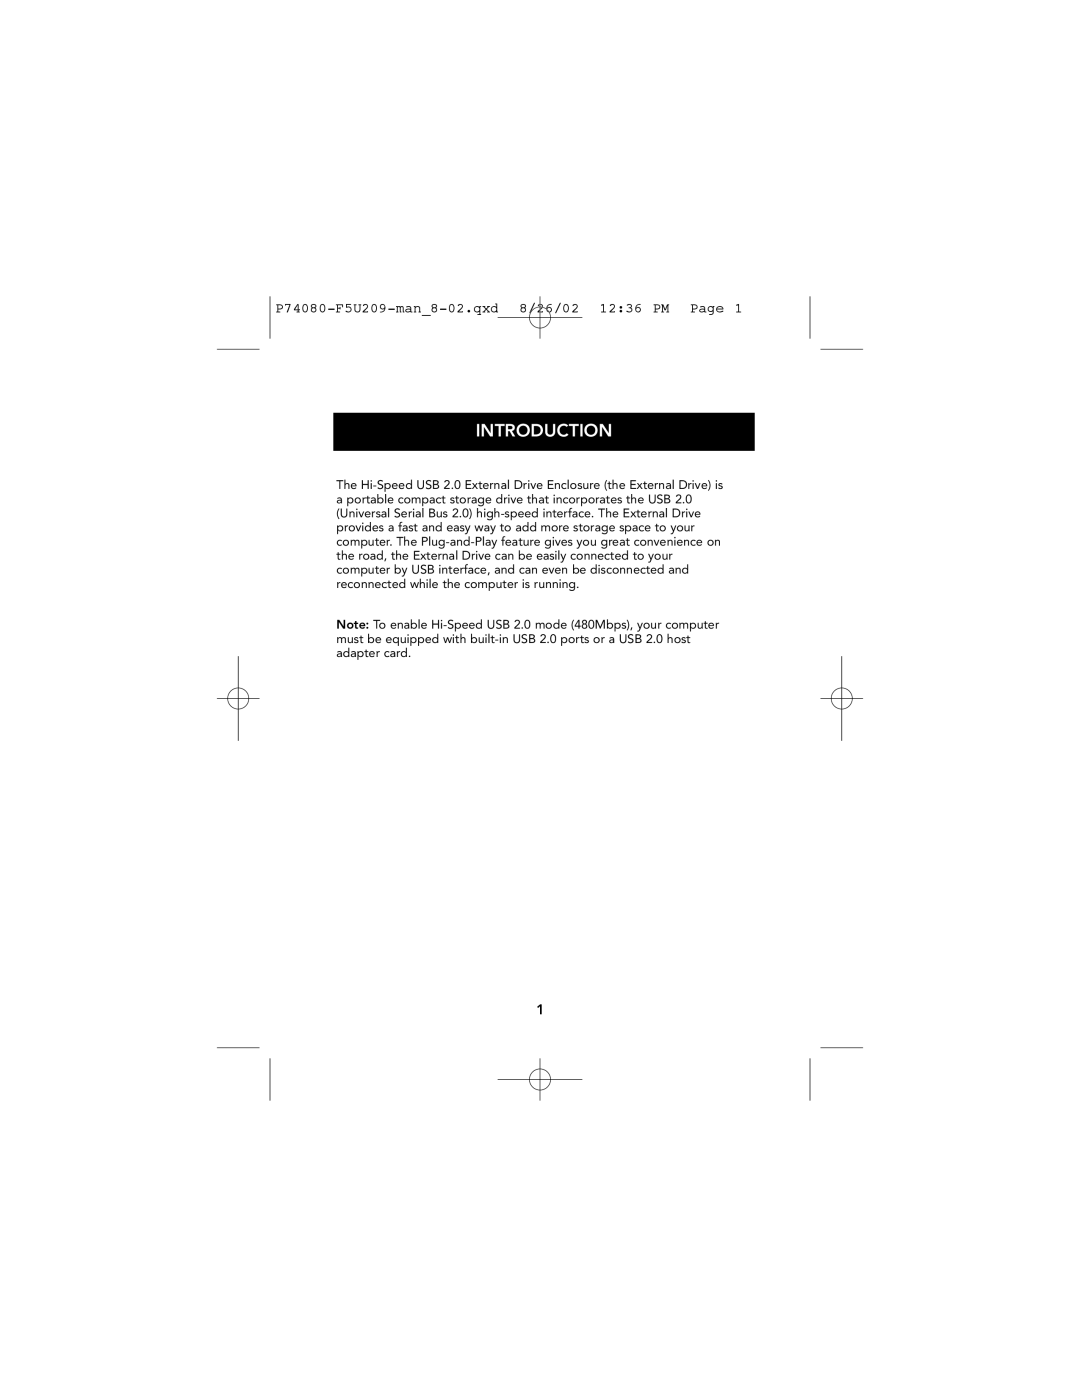 Belkin user manual Introduction, P74080-F5U209-man8-02.qxd 8/26/02 1236 PM Page 